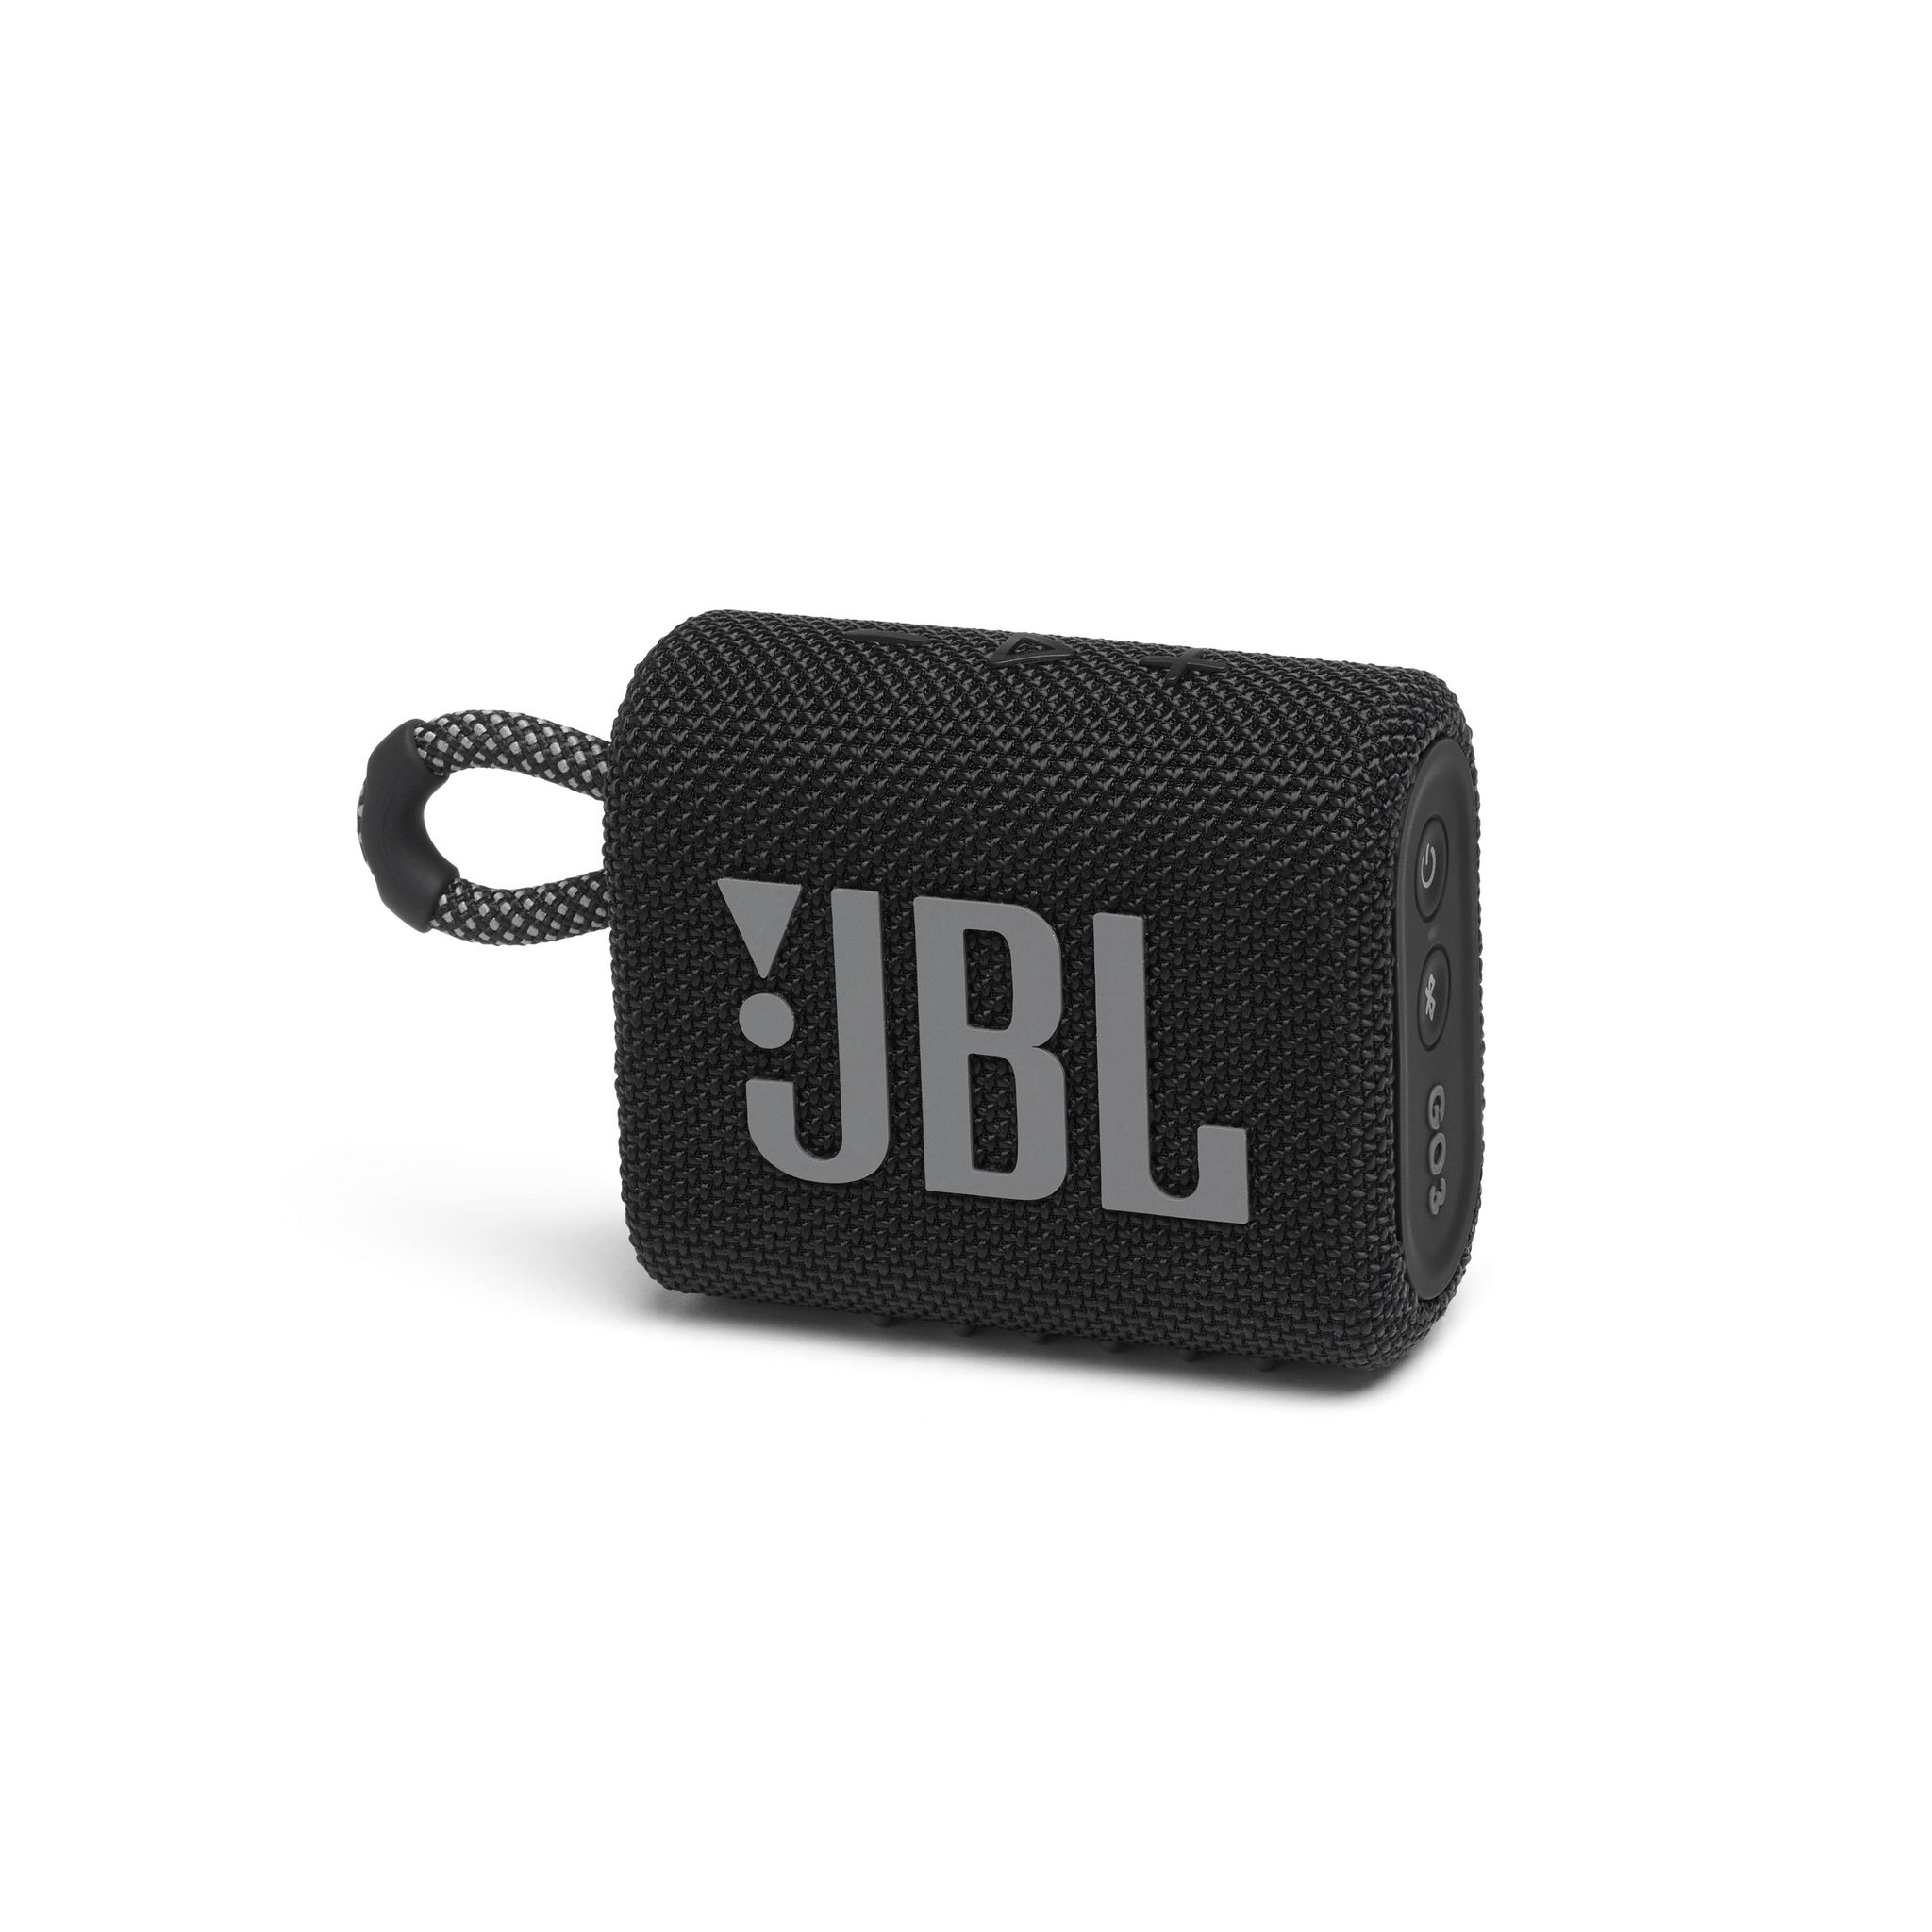 Jbl go 3 цены. Беспроводная колонка JBL go 3. Портативная акустическая система JBL go 3 чёрный. Беспроводная акустика JBL go 3 Red. Беспроводная акустика JBL go 3 Squad.